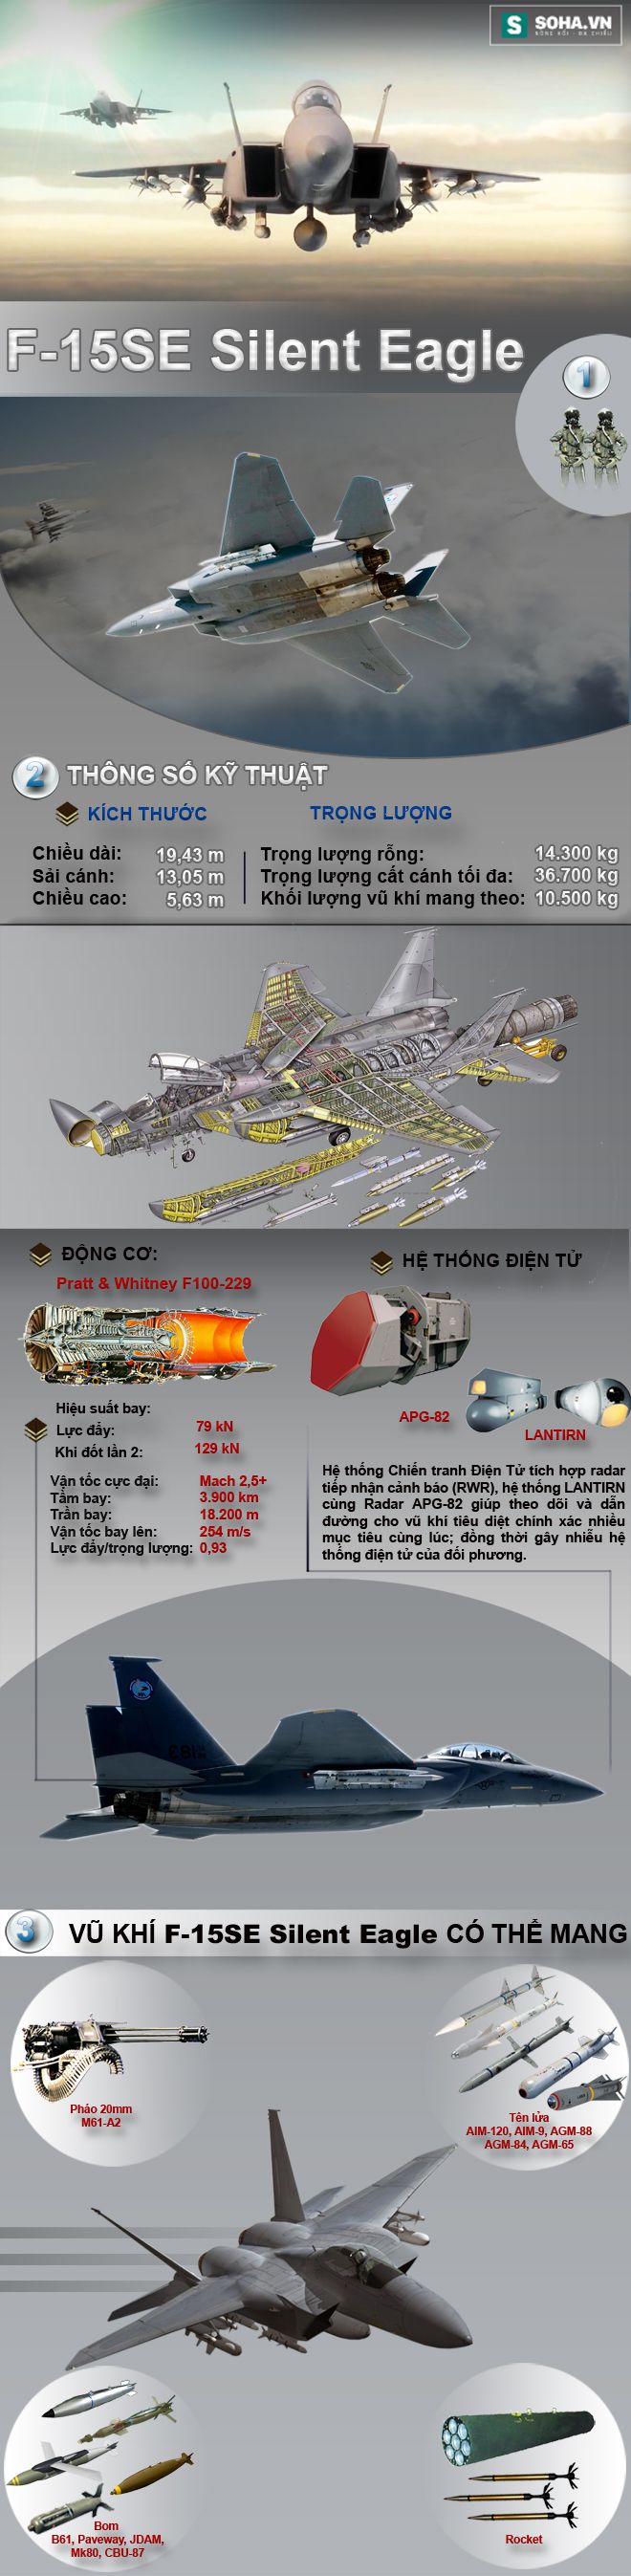 F-15SE Silent Eagle - Đối thủ xứng tầm của Su-35S - Ảnh 2.